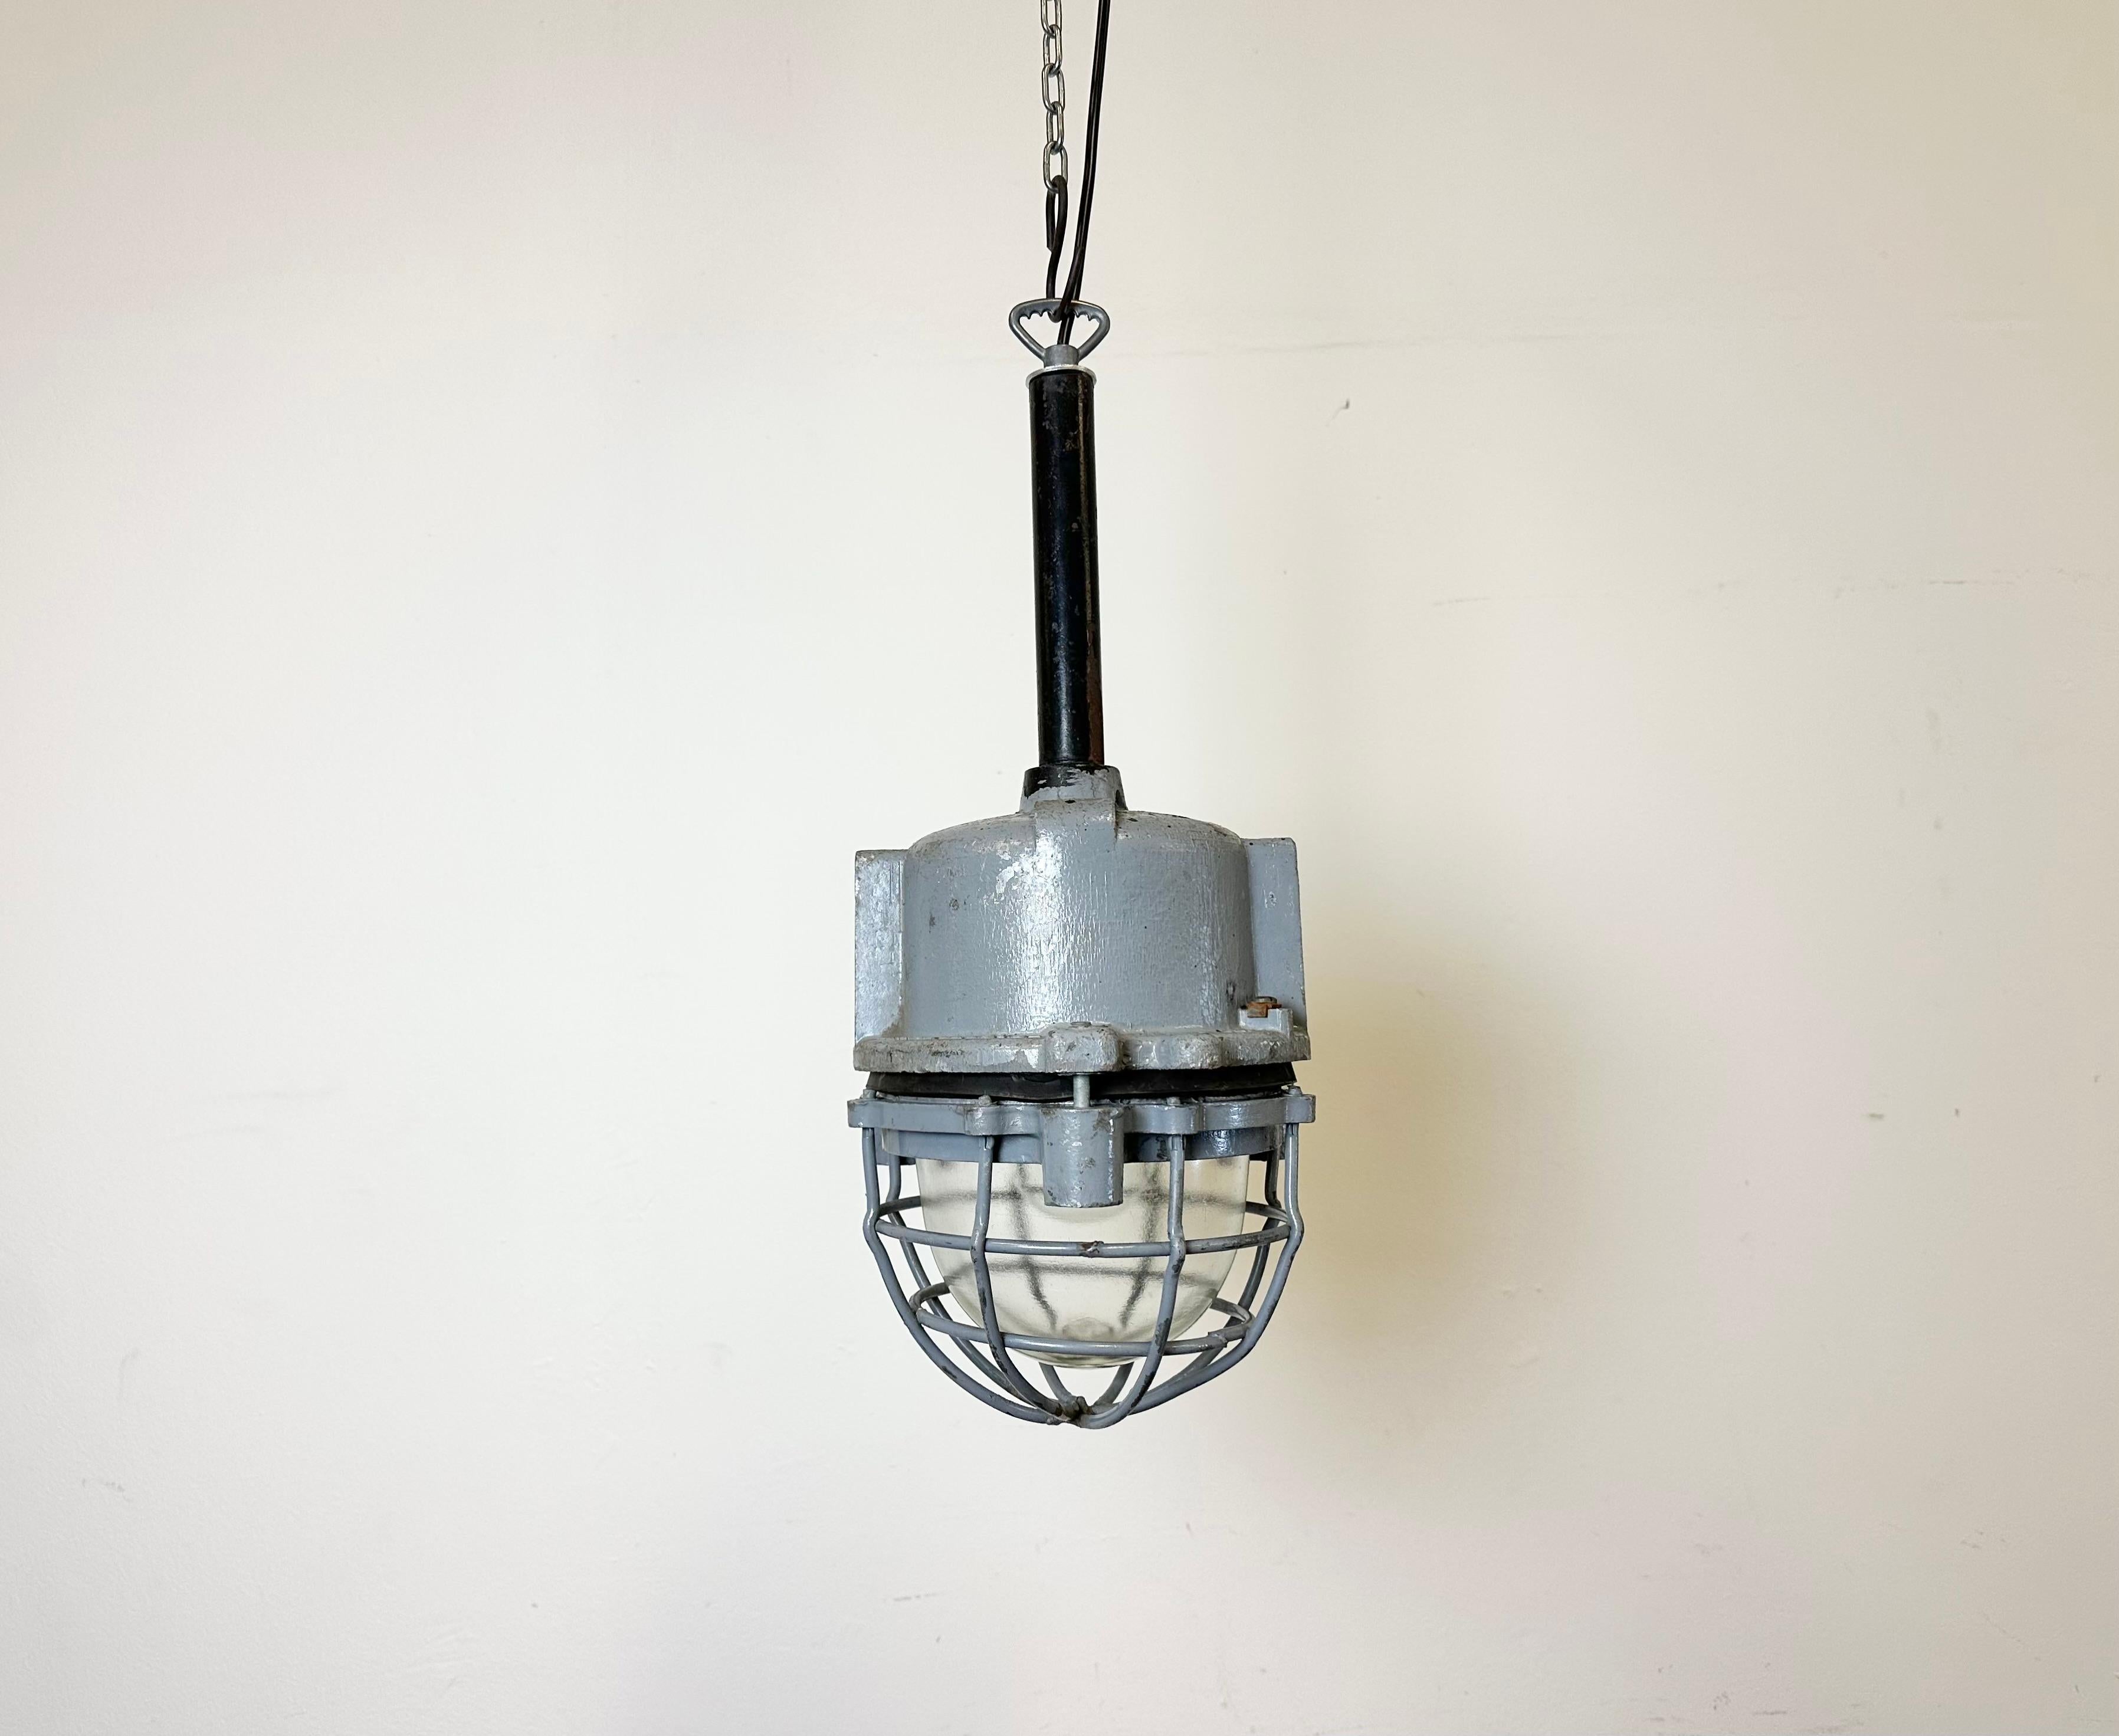 Lampe industrielle gris foncé avec ampoule en verre protecteur massif fabriquée par ELBA en Roumanie dans les années 1970.Elle se caractérise par un corps en fonte d'aluminium, une suspension en fer noir, un couvercle en verre transparent